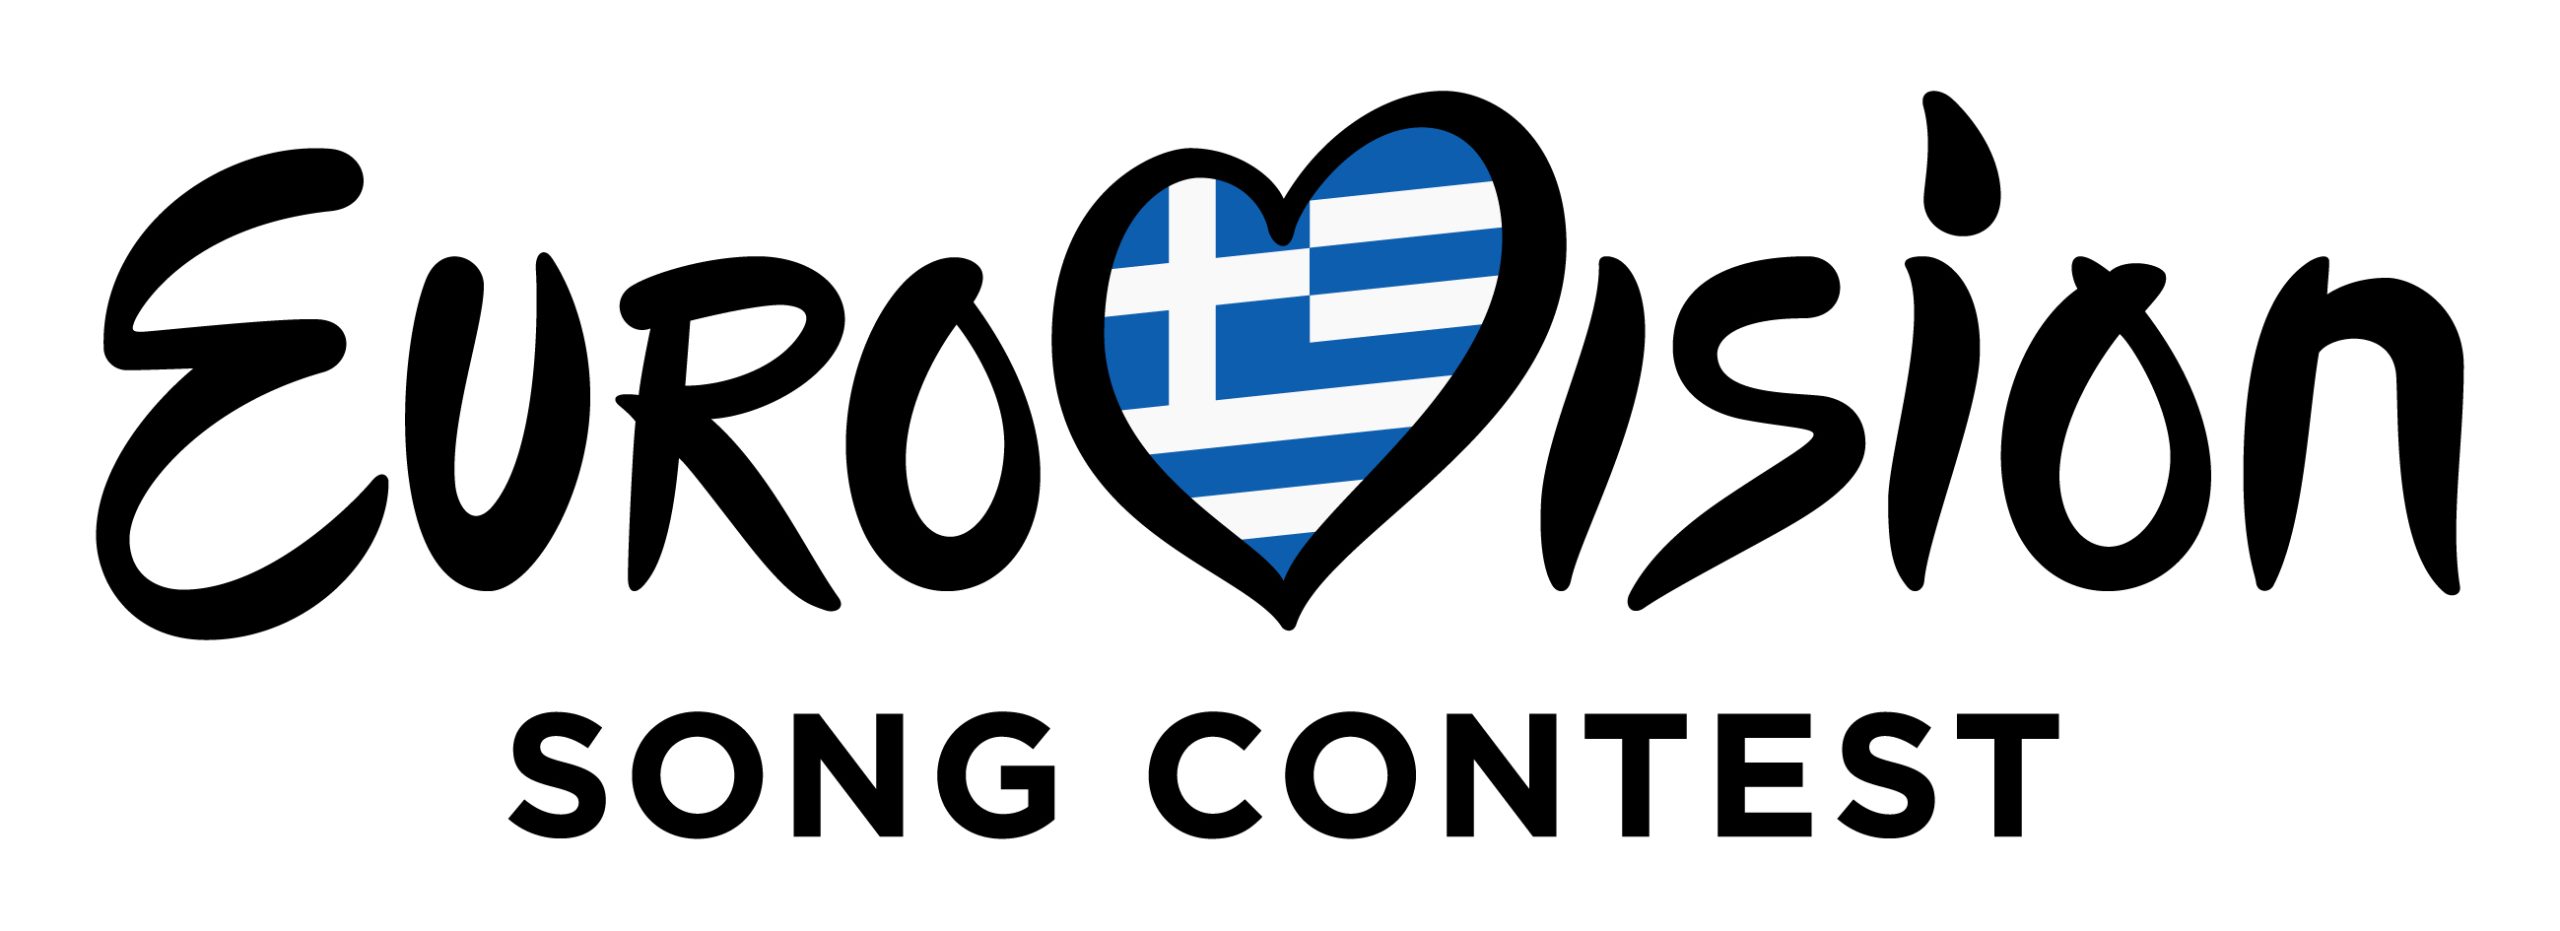 Σε πρώτη μετάδοση το τραγούδι της Ελλάδας | «Eurovision σε είδον» με τους Φώτη Σεργουλόπουλο και Τζένη Μελιτά